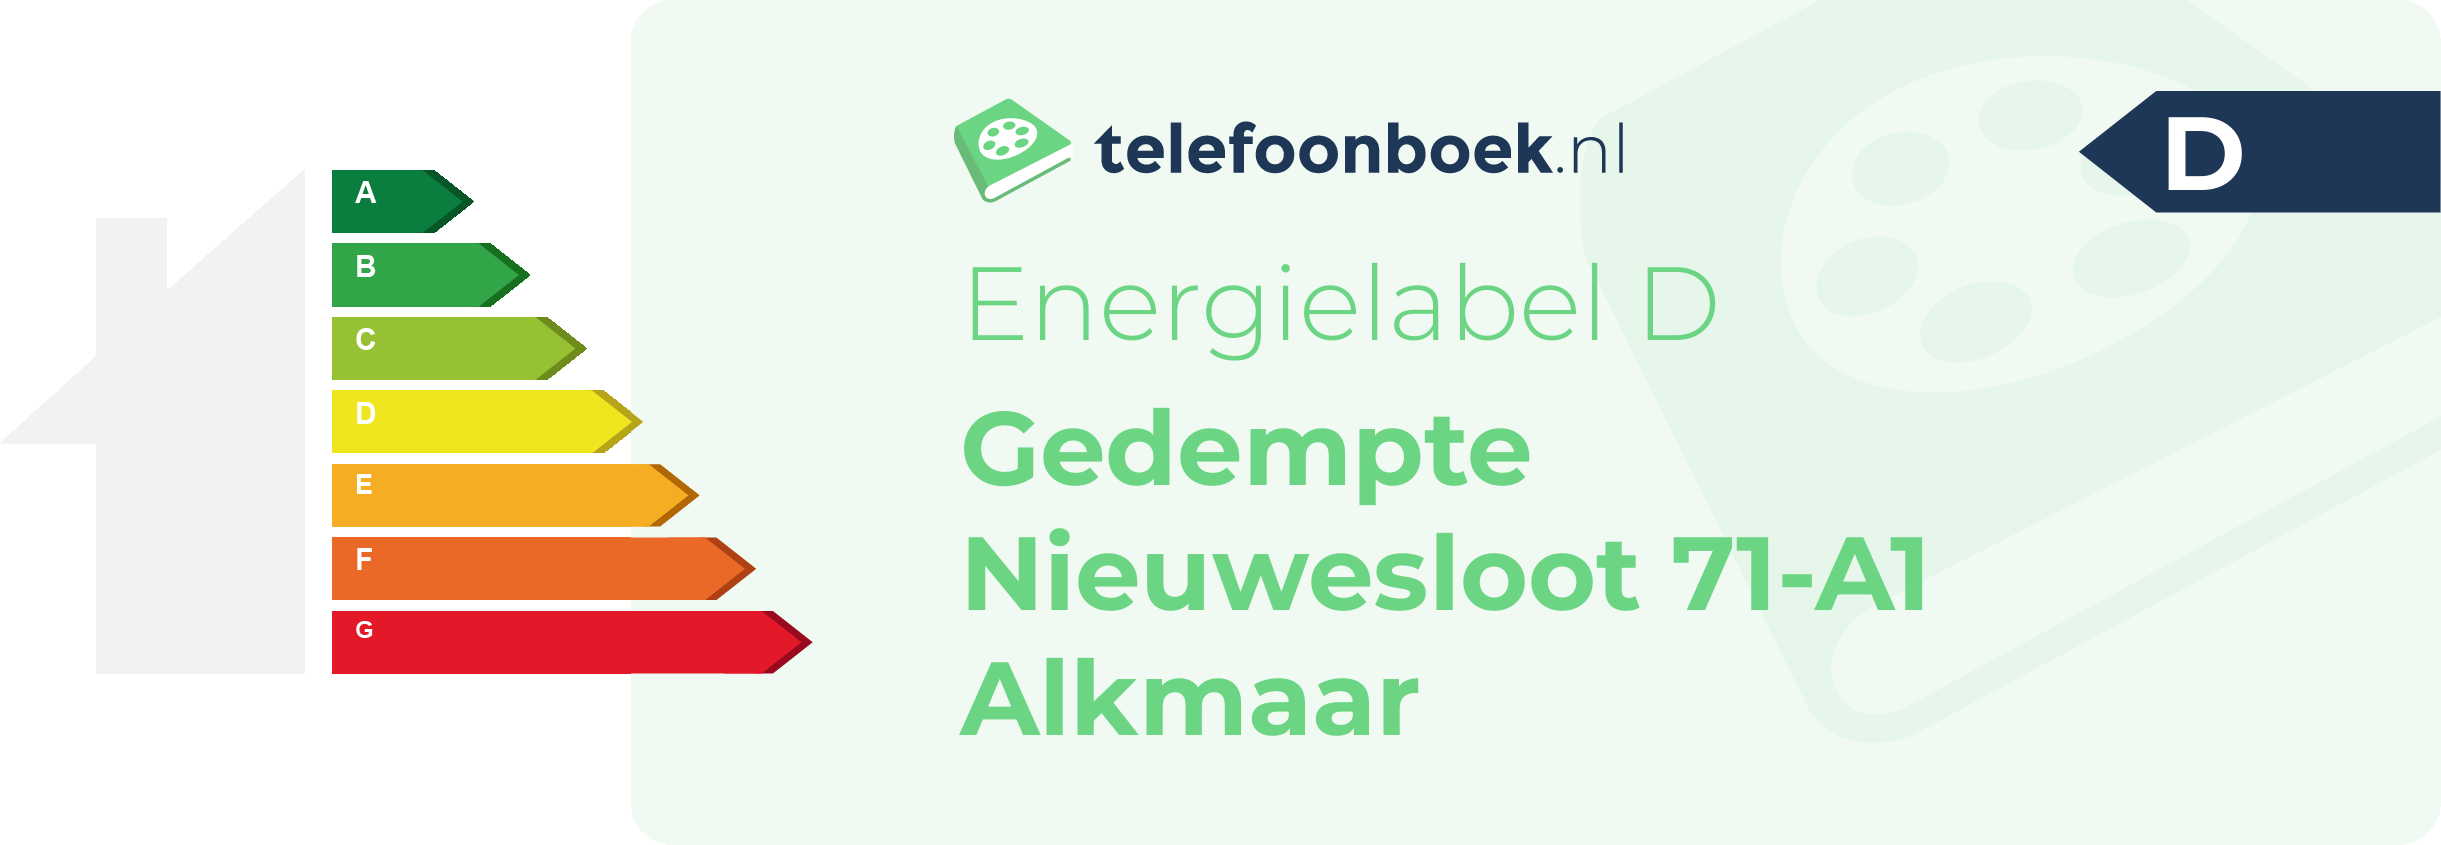 Energielabel Gedempte Nieuwesloot 71-A1 Alkmaar